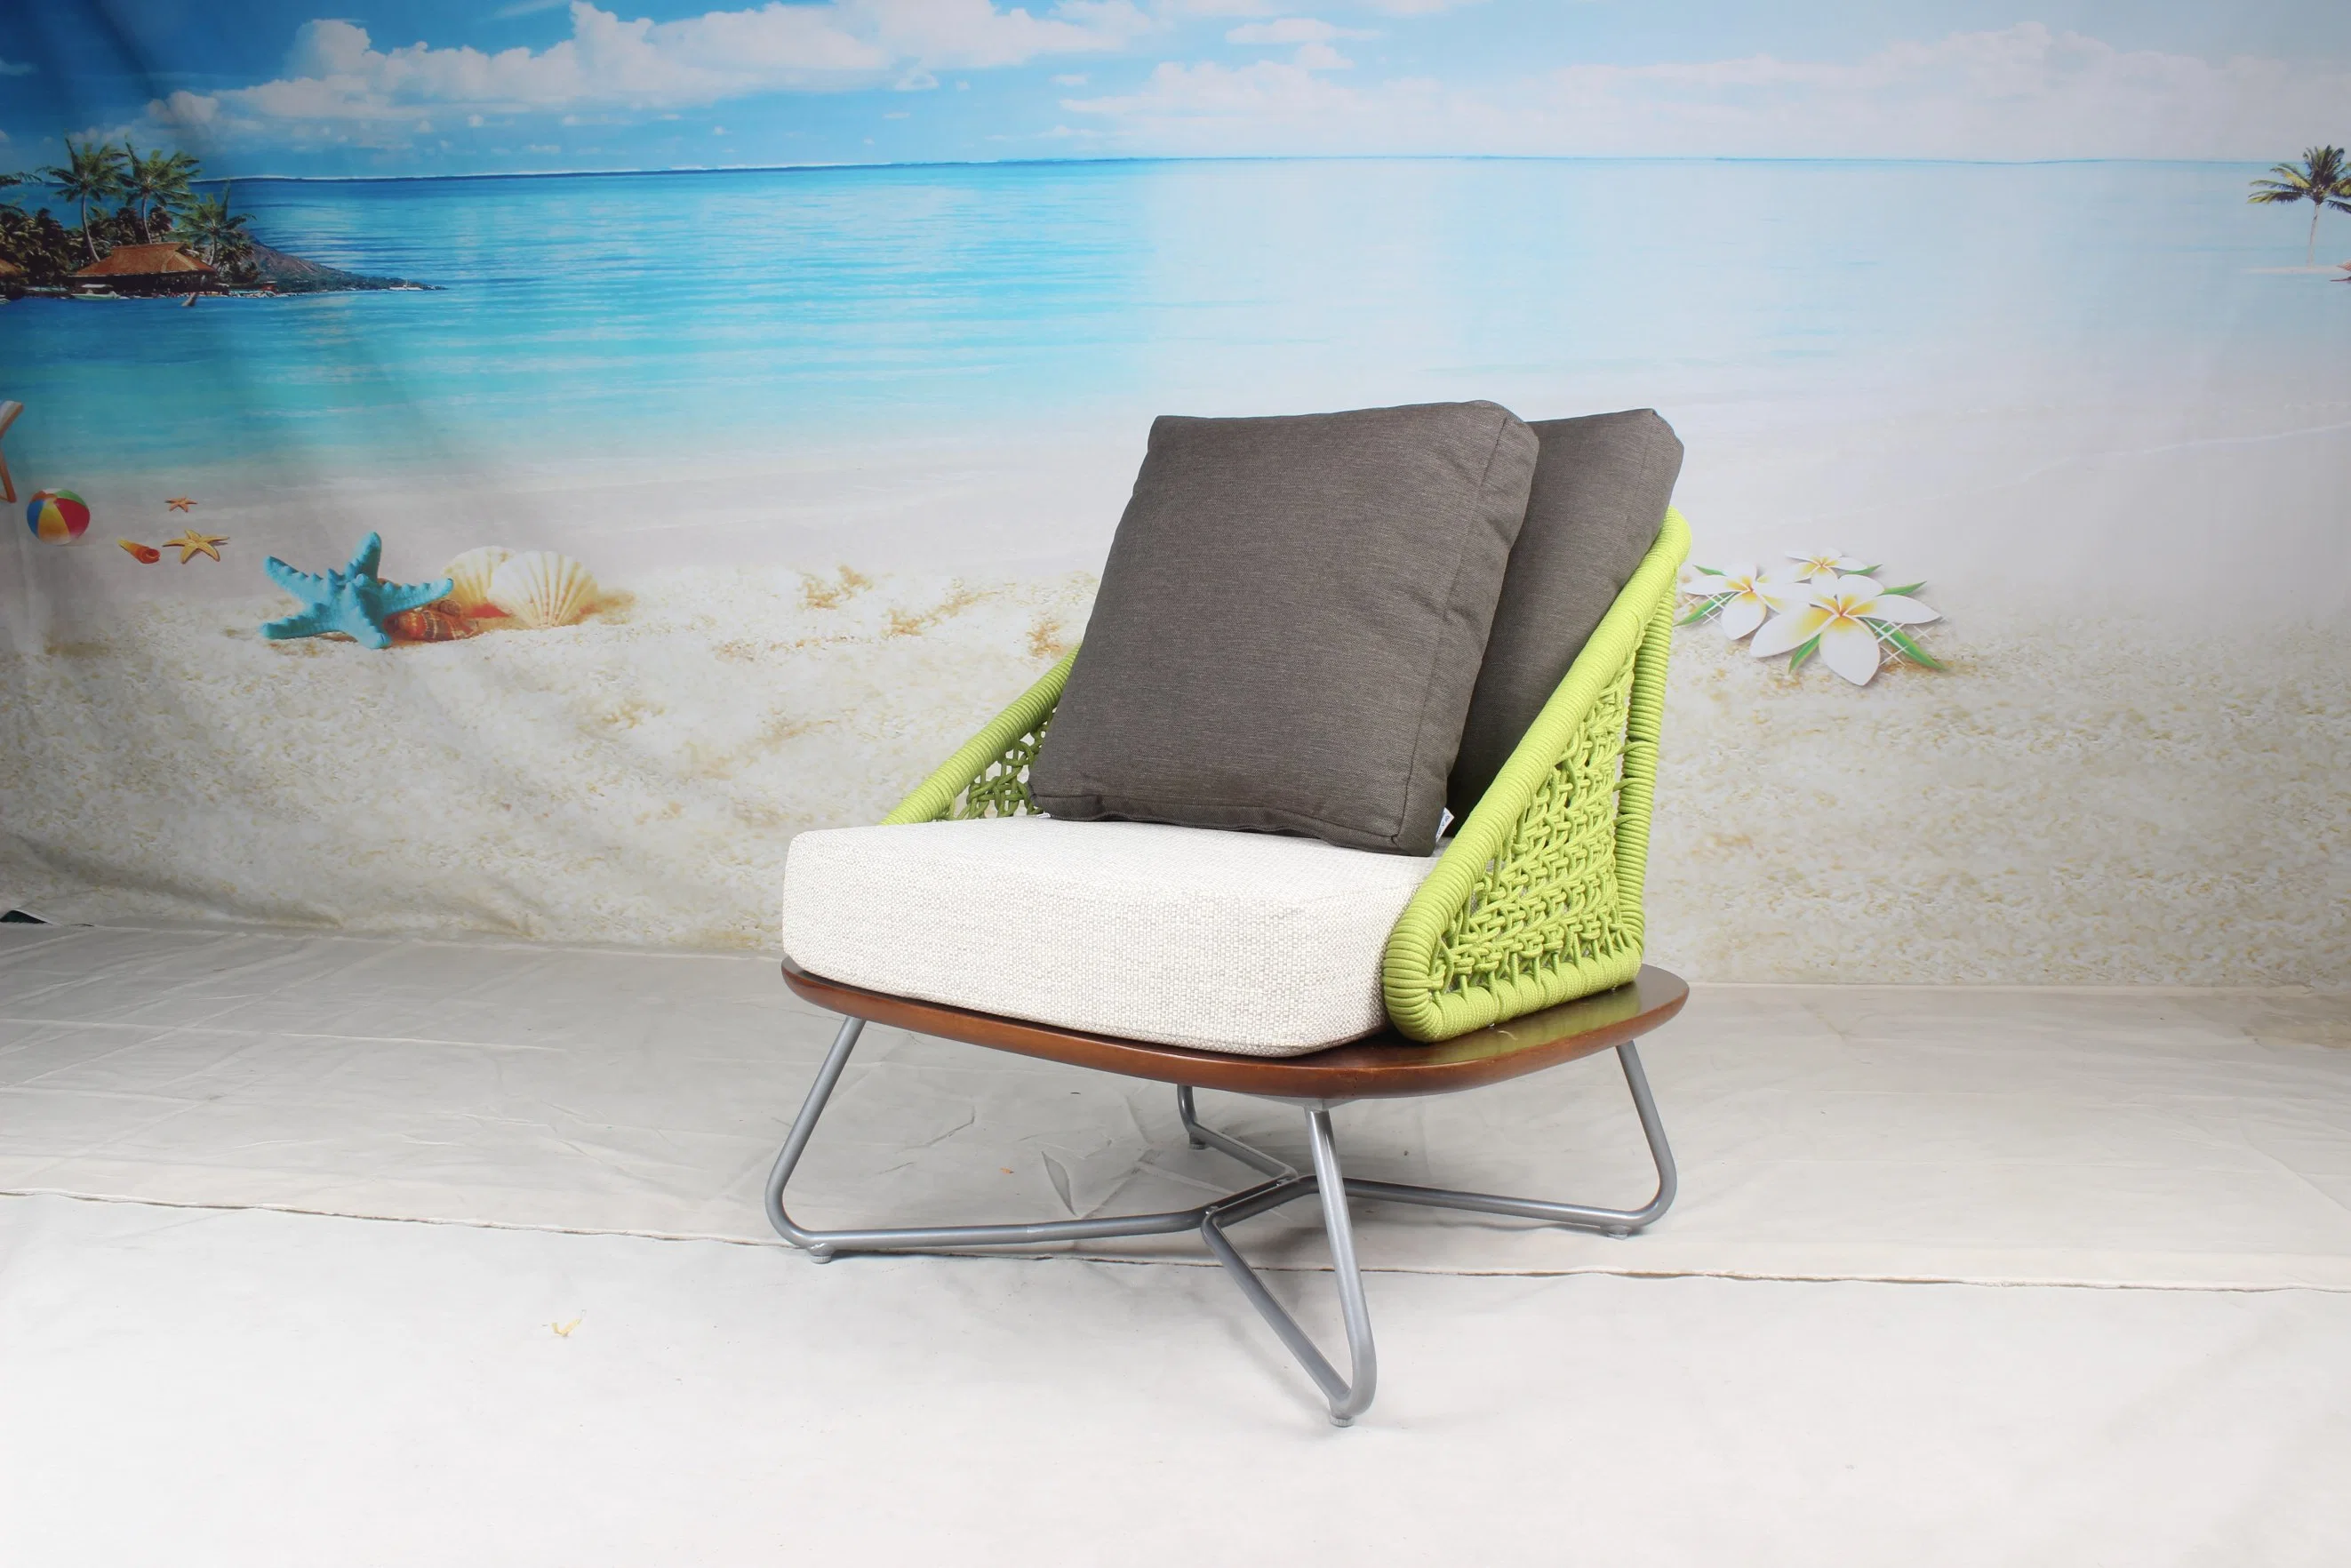 European Style Outdoor Garden Modern Home Hotel Furniture Chair